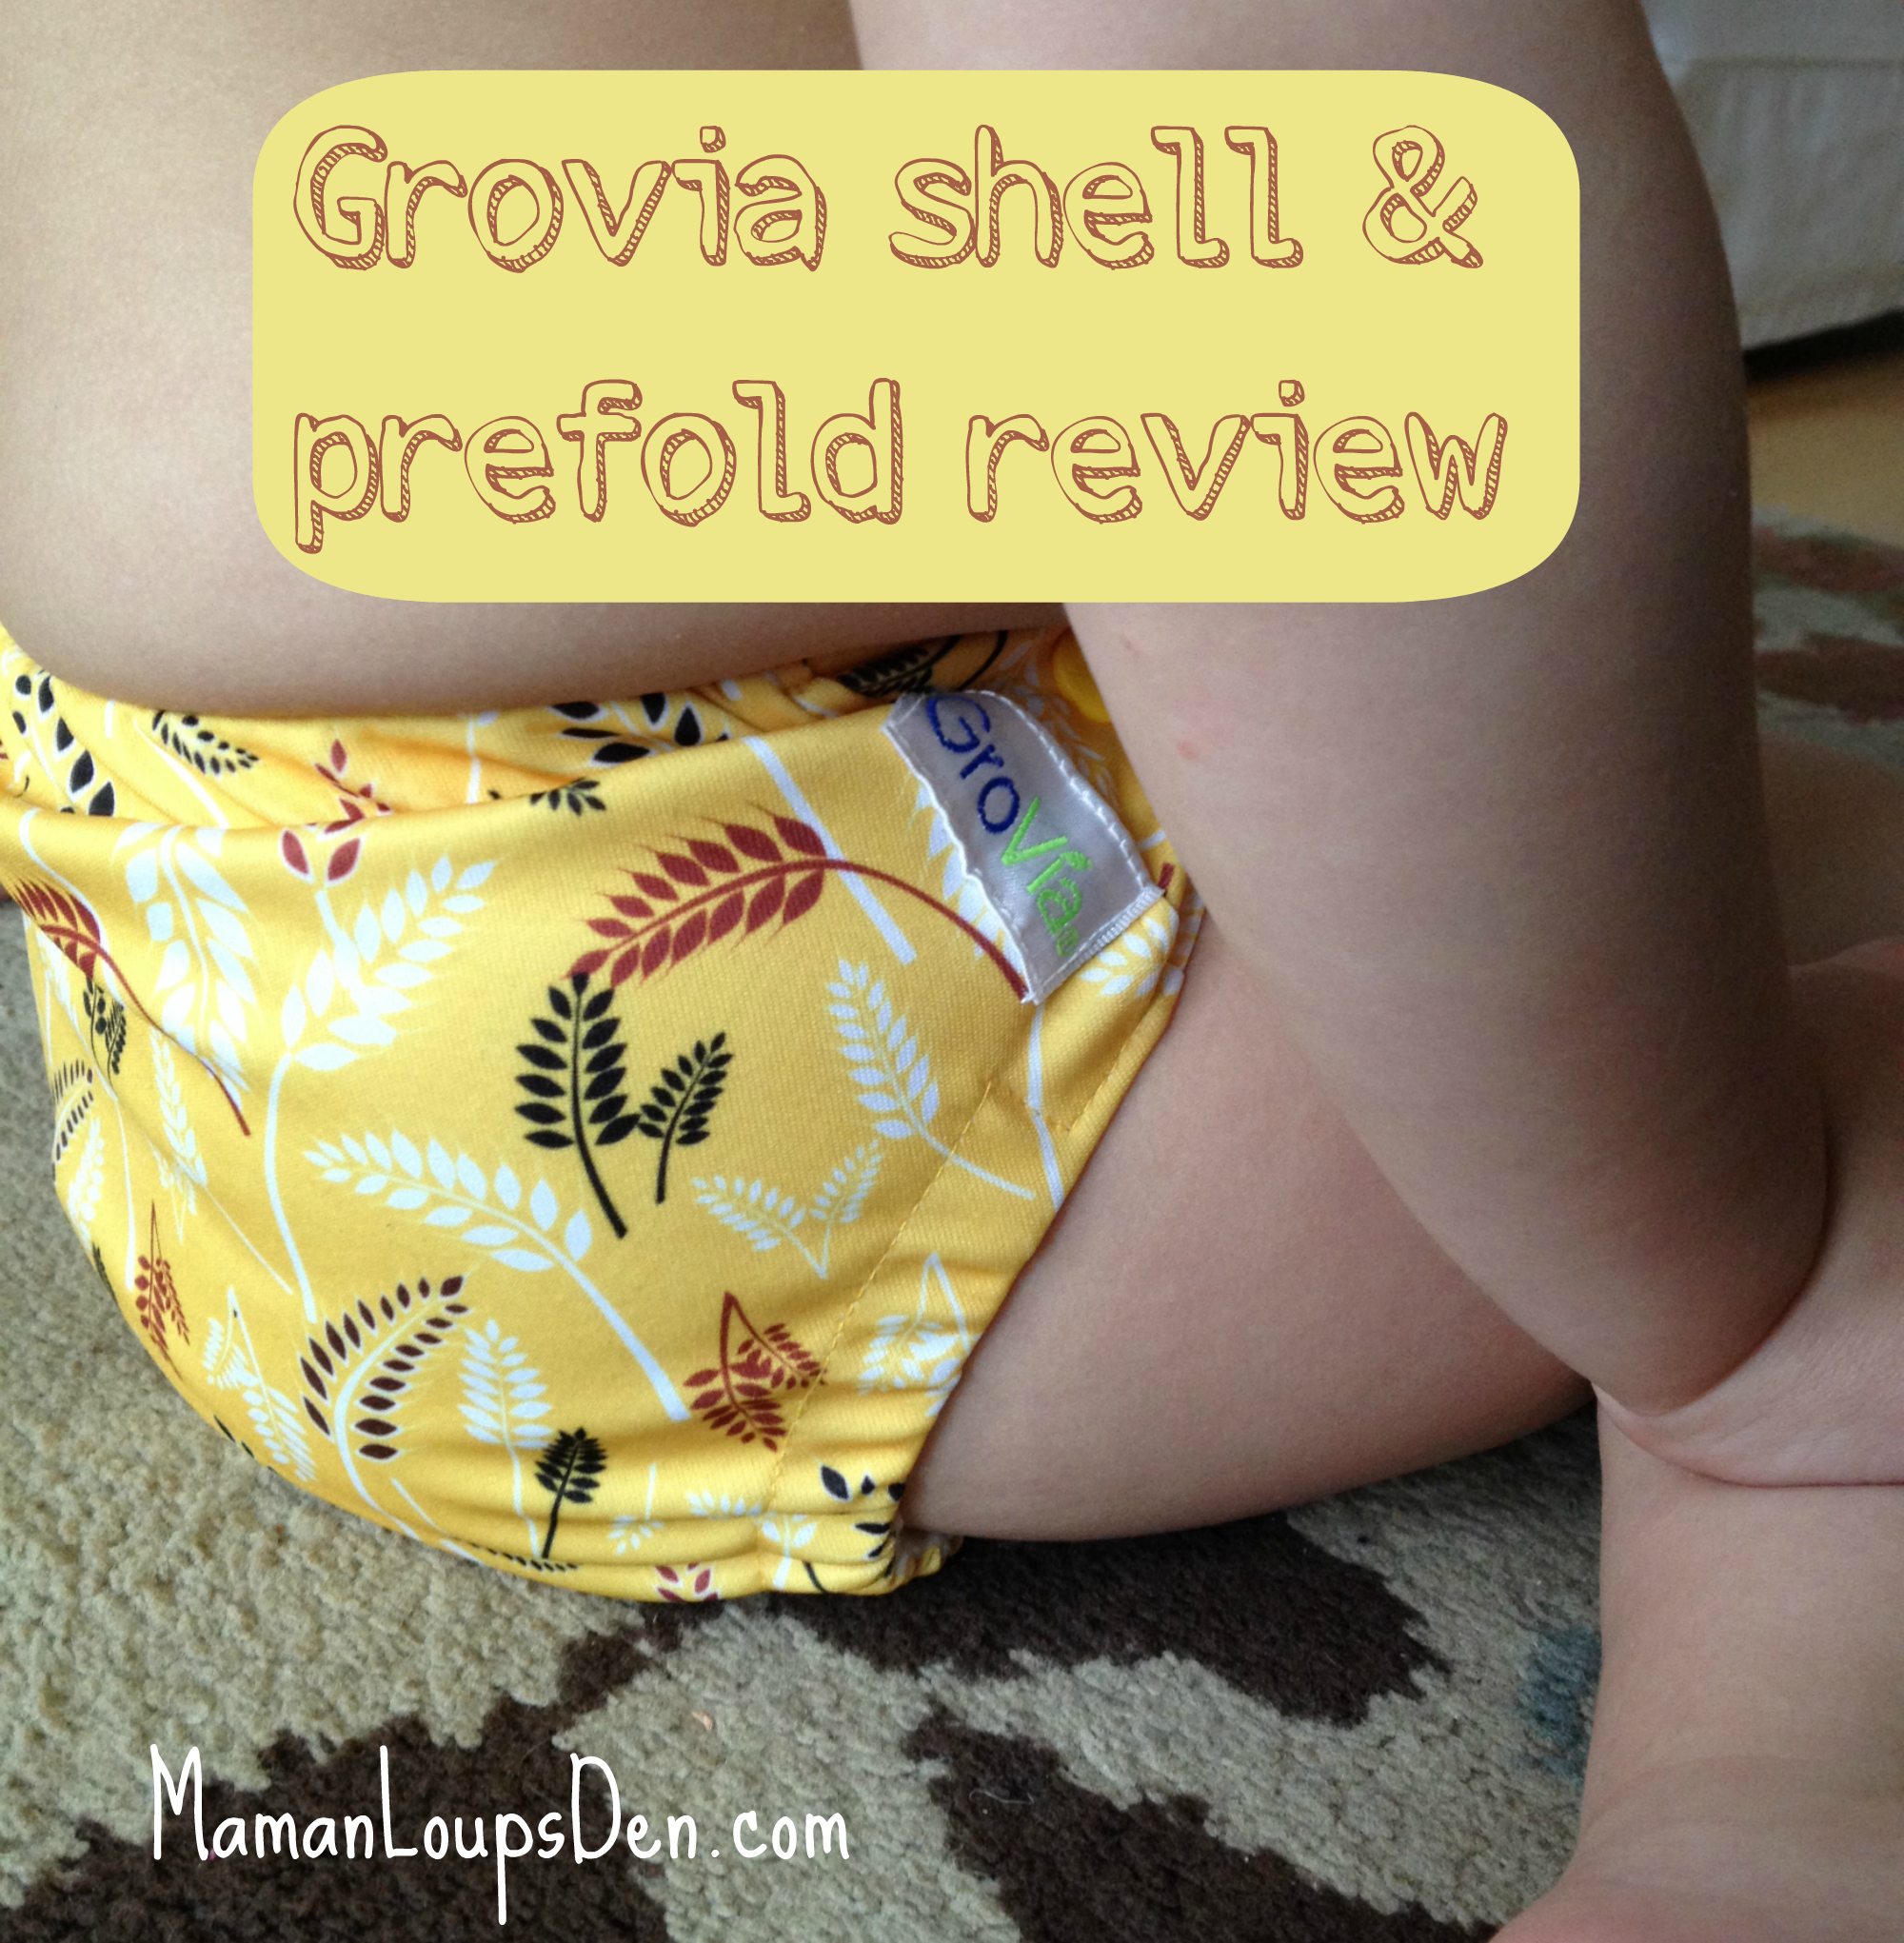 Dreams do come true! My GroVia Shell and Prefolds Review